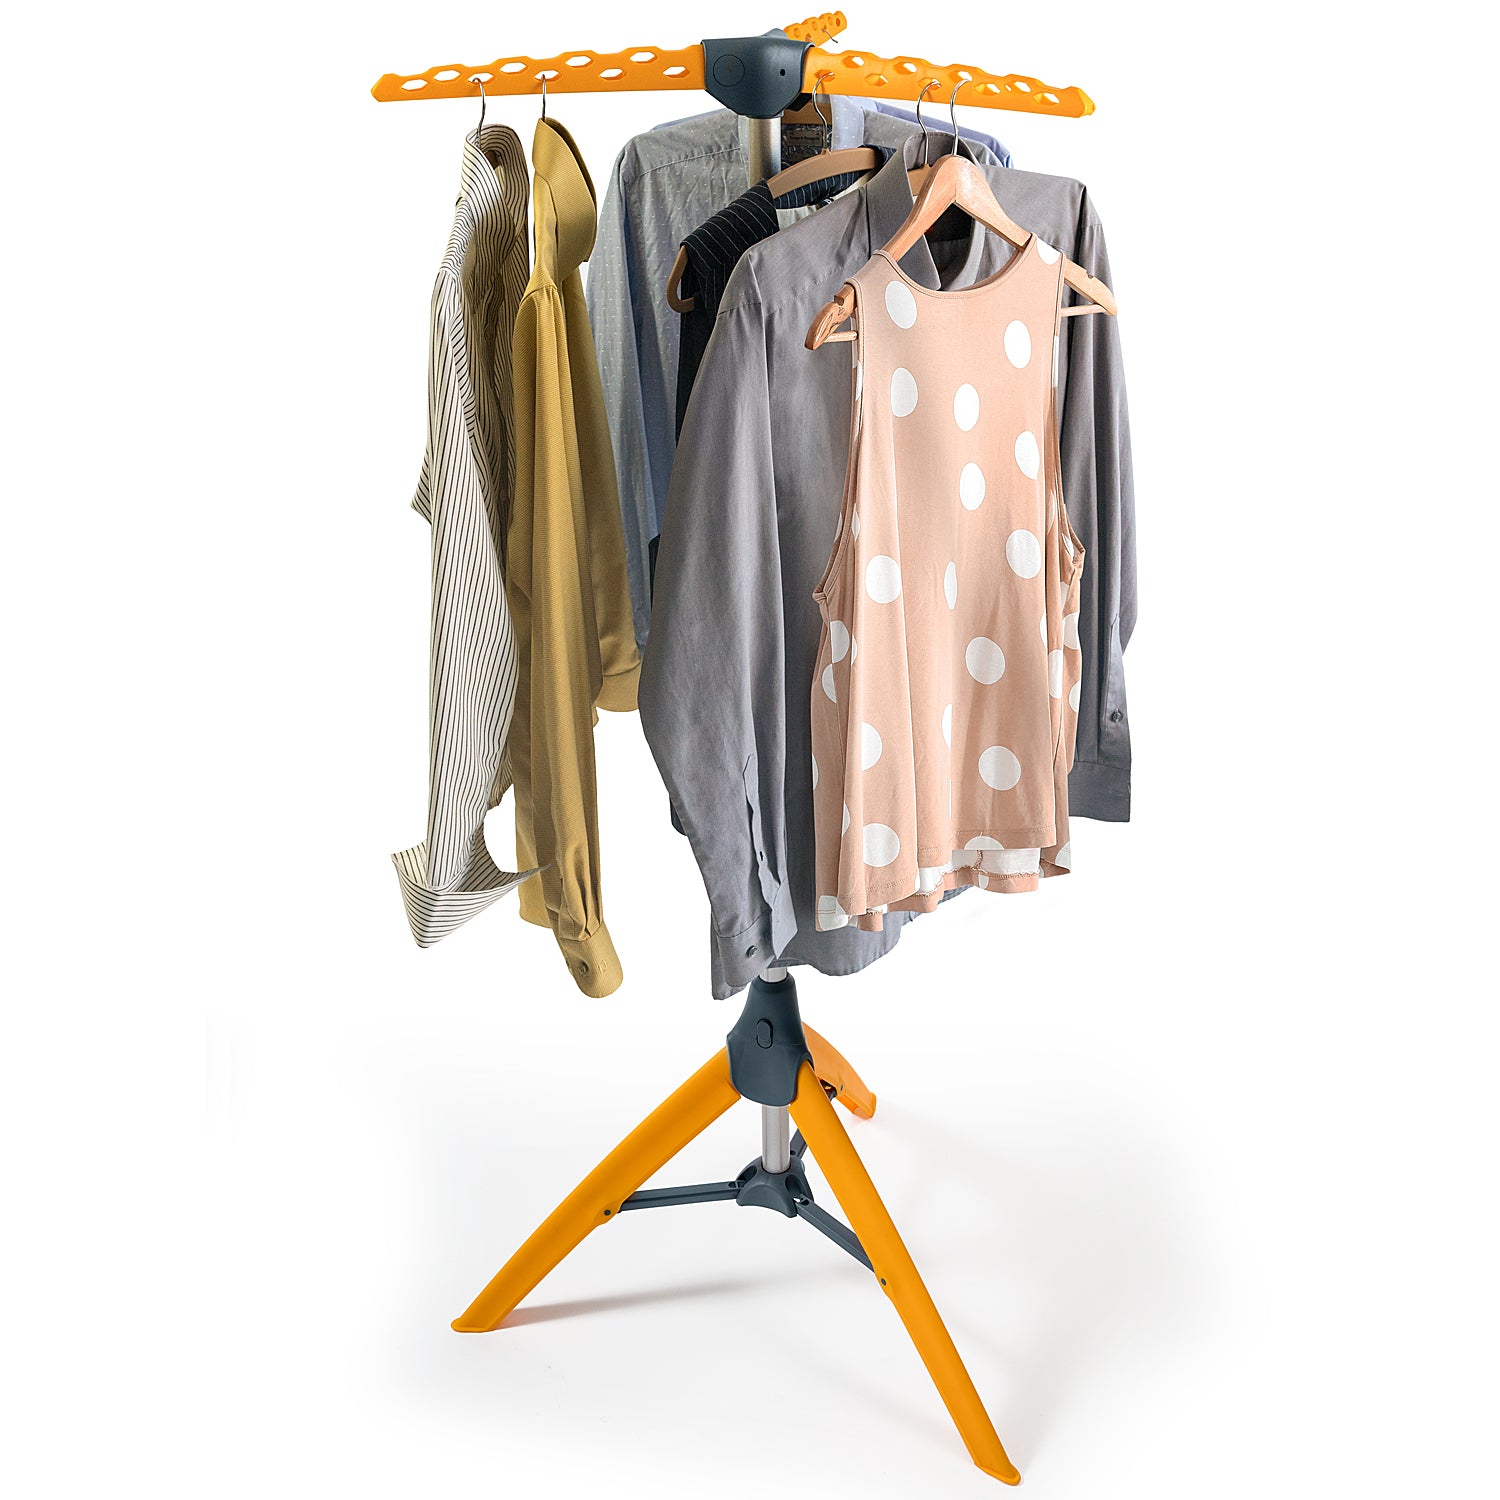 Clothes airer, Folding Clothes Airer, Hangaway Clothes Rack, Clothes Hanger Stand, Drying Rack Clothes, Tatkraft Palm, 2